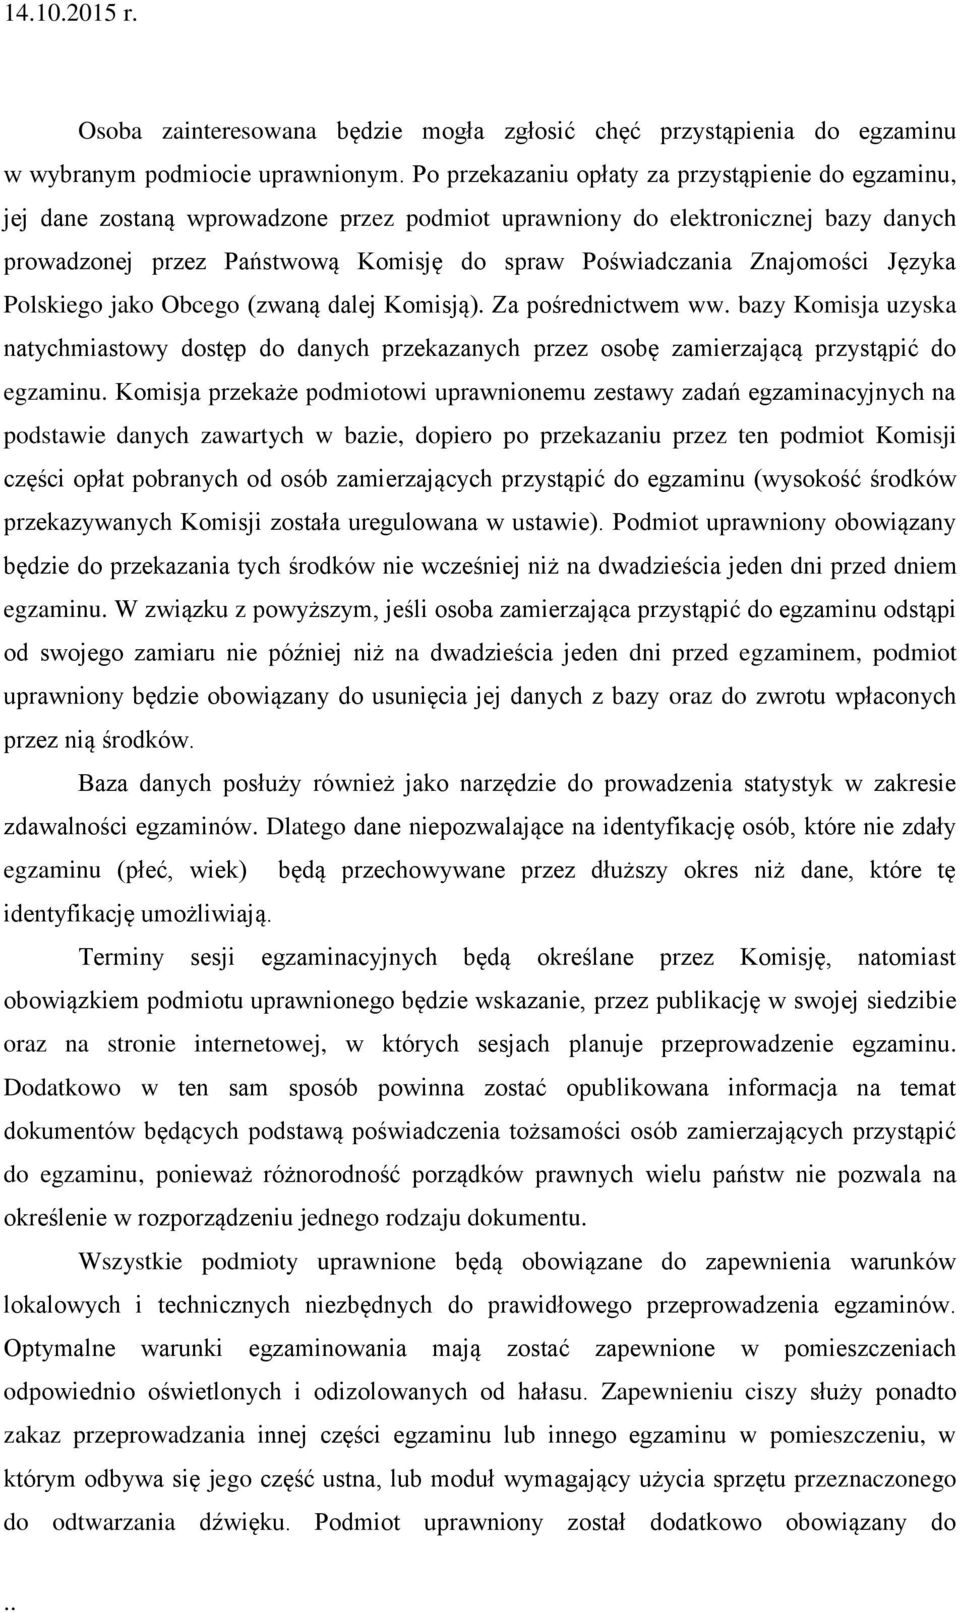 Znajomości Języka Polskiego jako Obcego (zwaną dalej Komisją). Za pośrednictwem ww. bazy Komisja uzyska natychmiastowy dostęp do danych przekazanych przez osobę zamierzającą przystąpić do egzaminu.